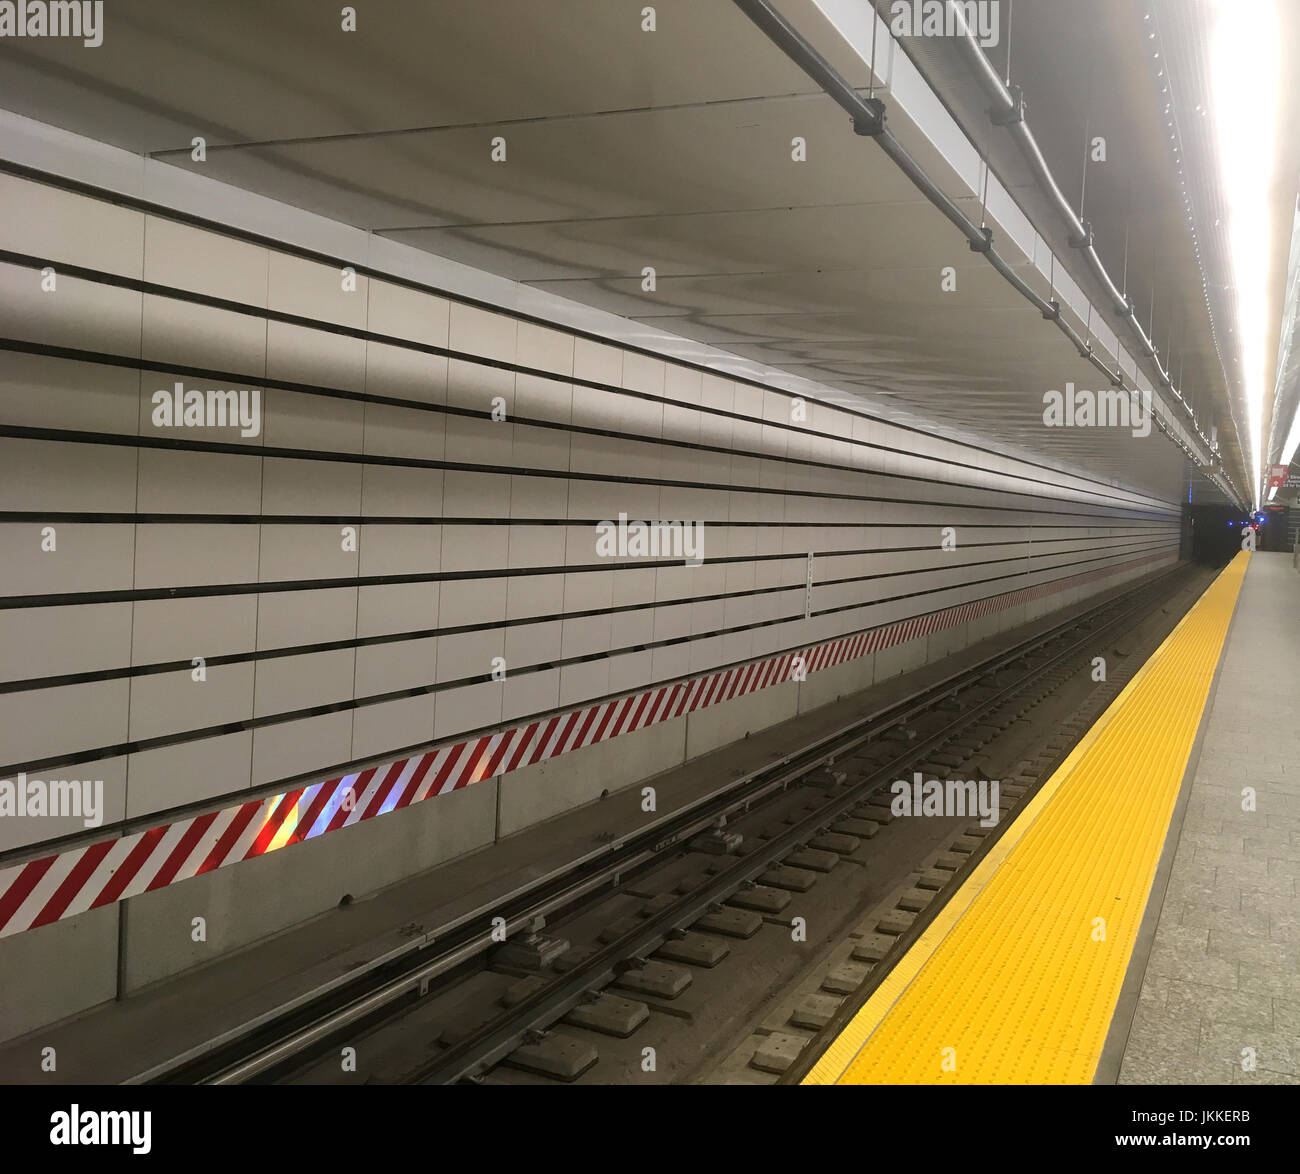 Lunga pista metropolitana che si estende in avanti. Stazione della metropolitana di New York City con piastrelle bianche della metropolitana, avvertimento di pericolo rosso e bianco e binari del treno chiari. Foto Stock